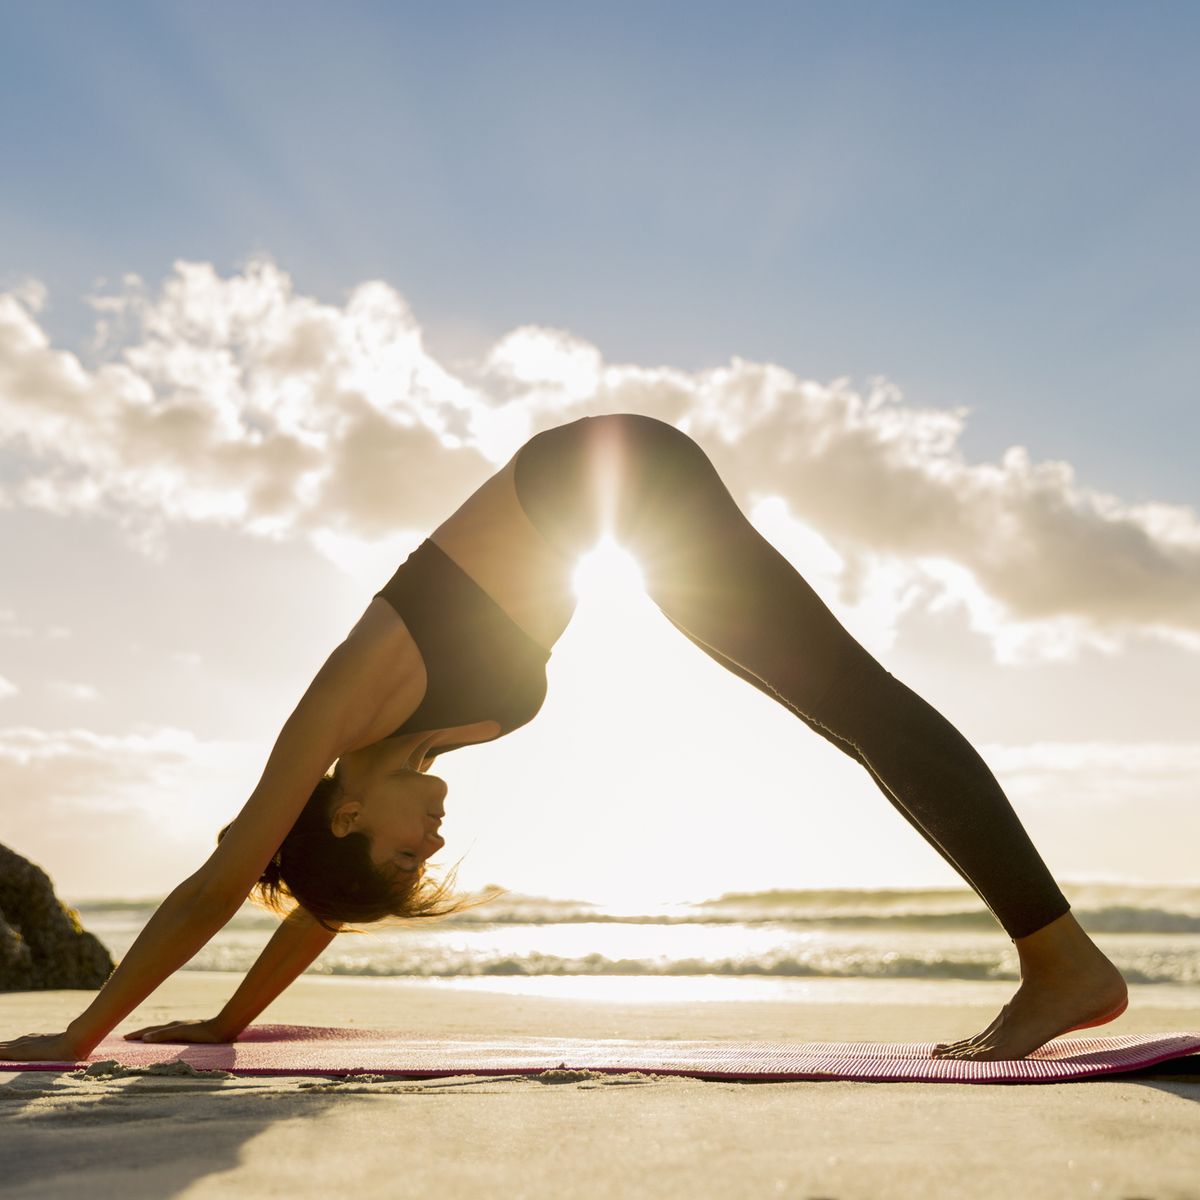 Siete posturas de Yoga para llenarte de energía